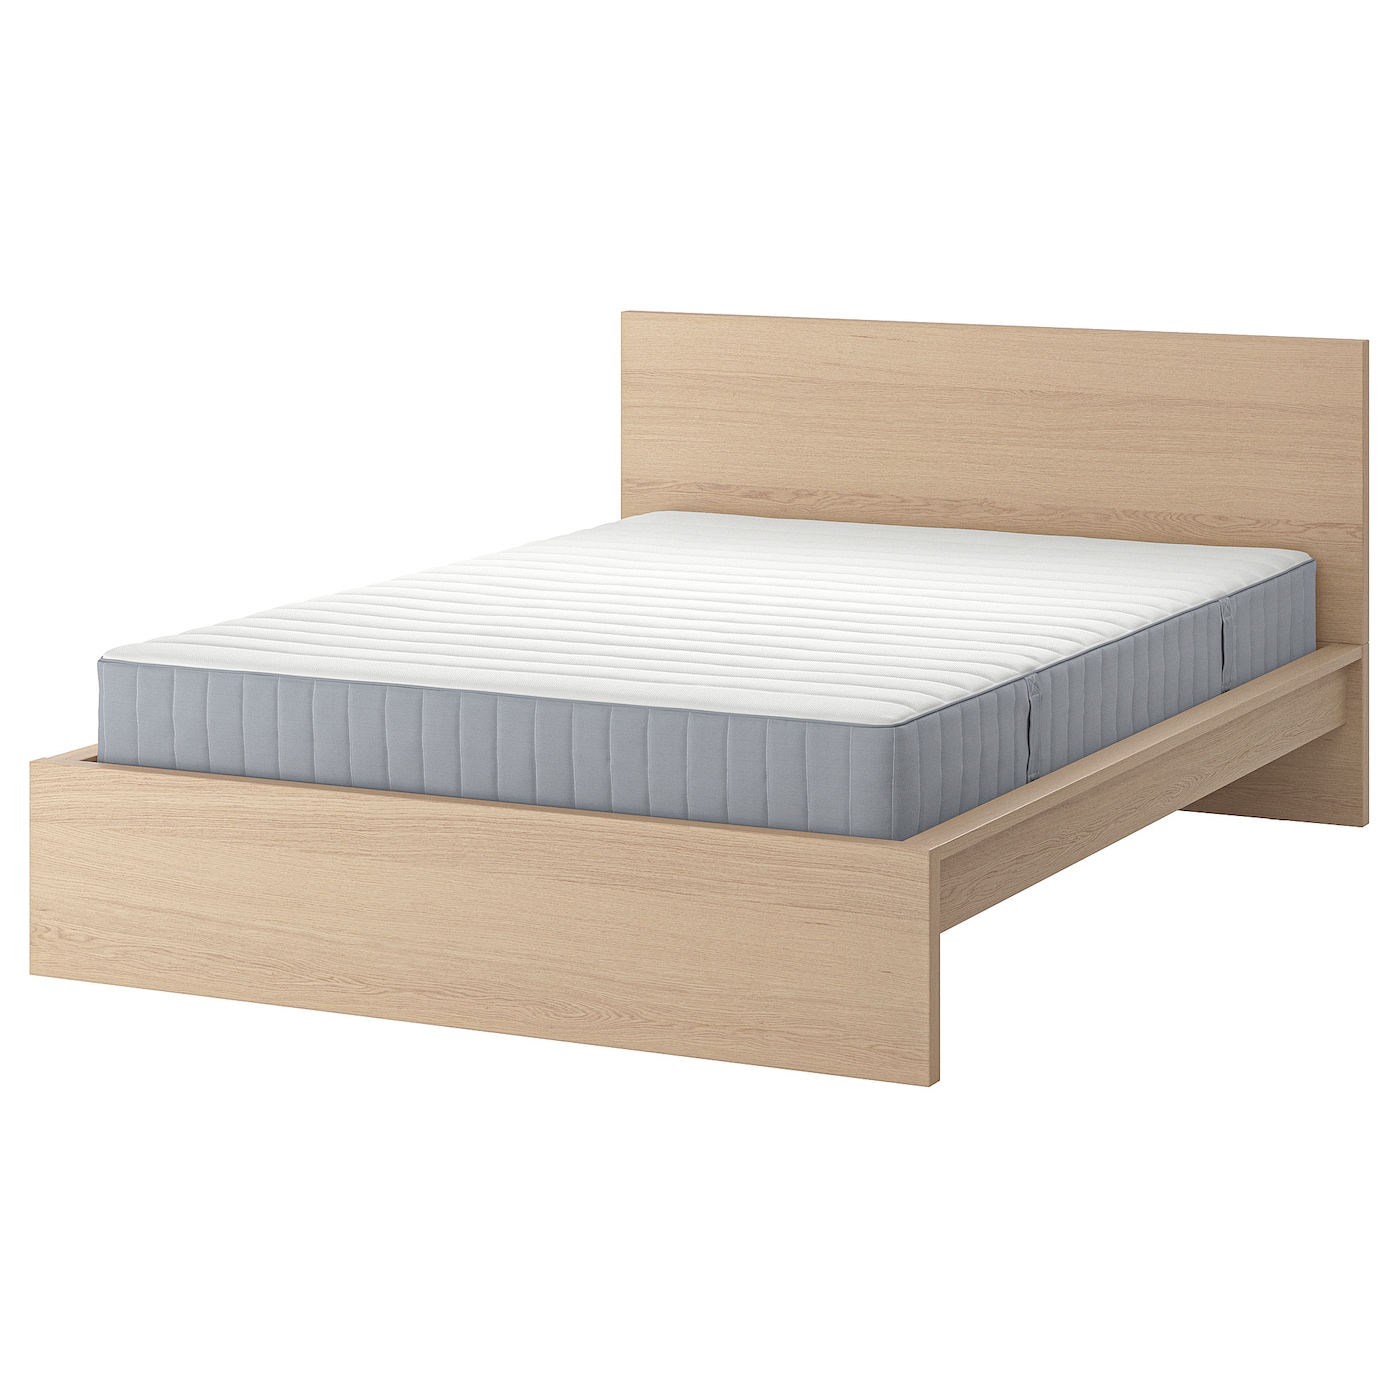 Кровать - IKEA MALM, 200х180 см, матрас средне-жесткий, под беленый дуб, МАЛЬМ ИКЕА